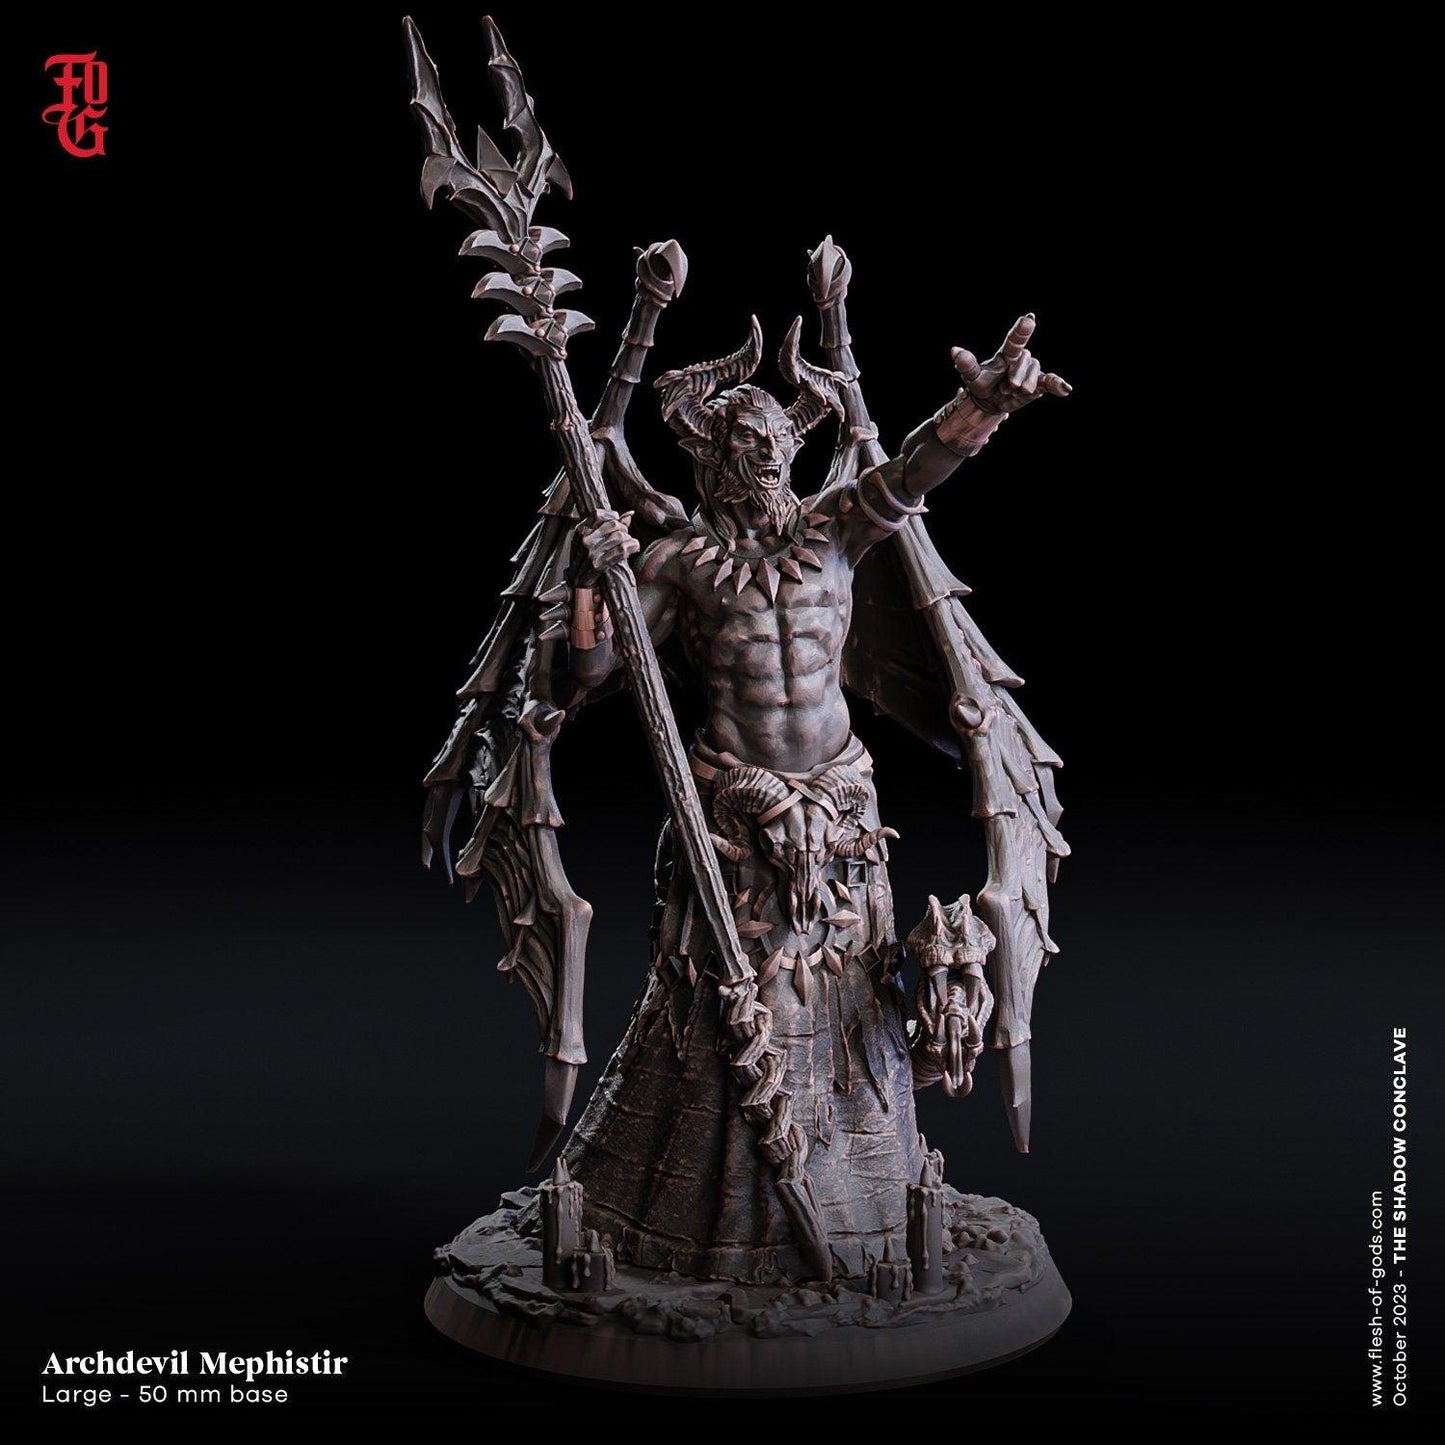 Archdevil Memphistir Large Demon Sorcerer Miniature | Malevolent Fiend for Tabletop RPGs | 50mm base - Plague Miniatures shop for DnD Miniatures